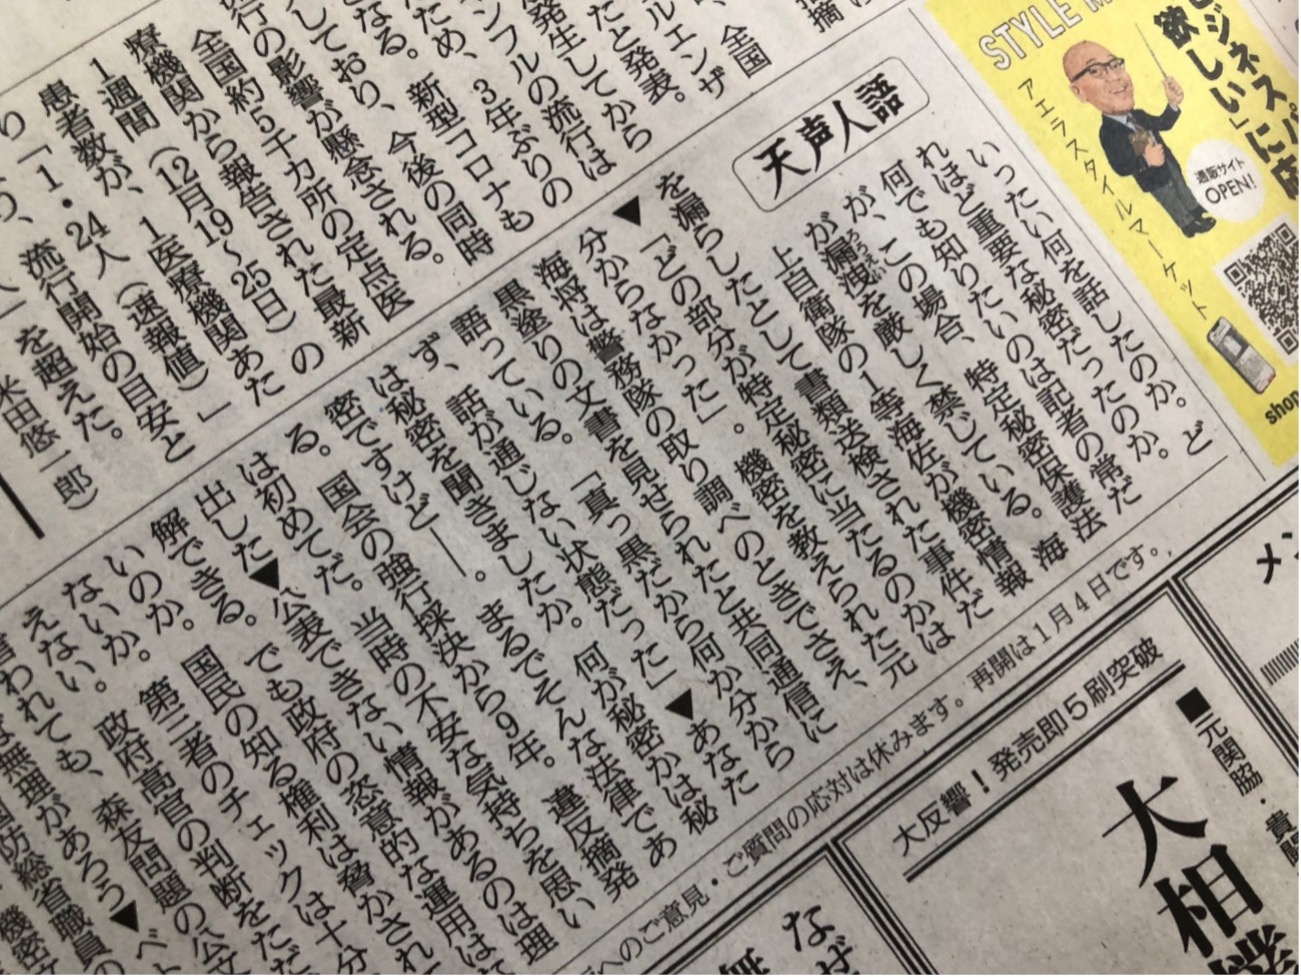 12月２９日朝日新聞